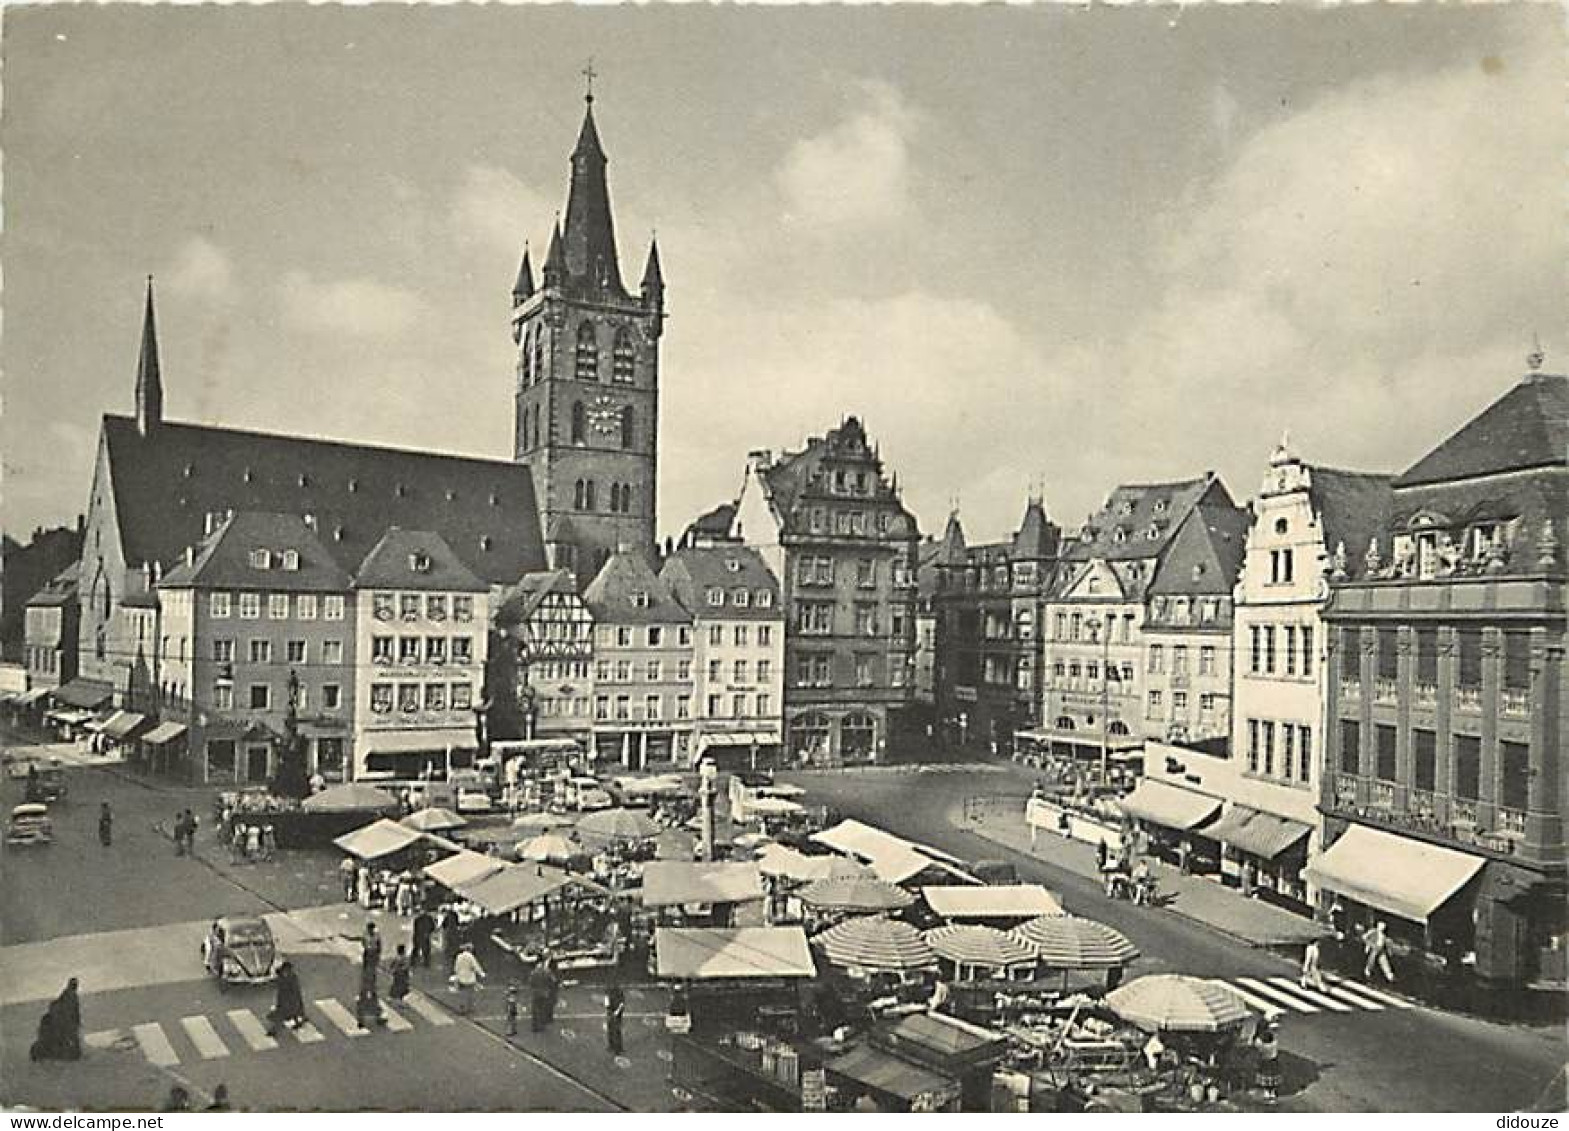 Marchés - Allemagne - Deutschland - Trier - Hauptmarkt Und St. Gangolph - Grande Place Du Marché Et L'église Saint-Gango - Marchés